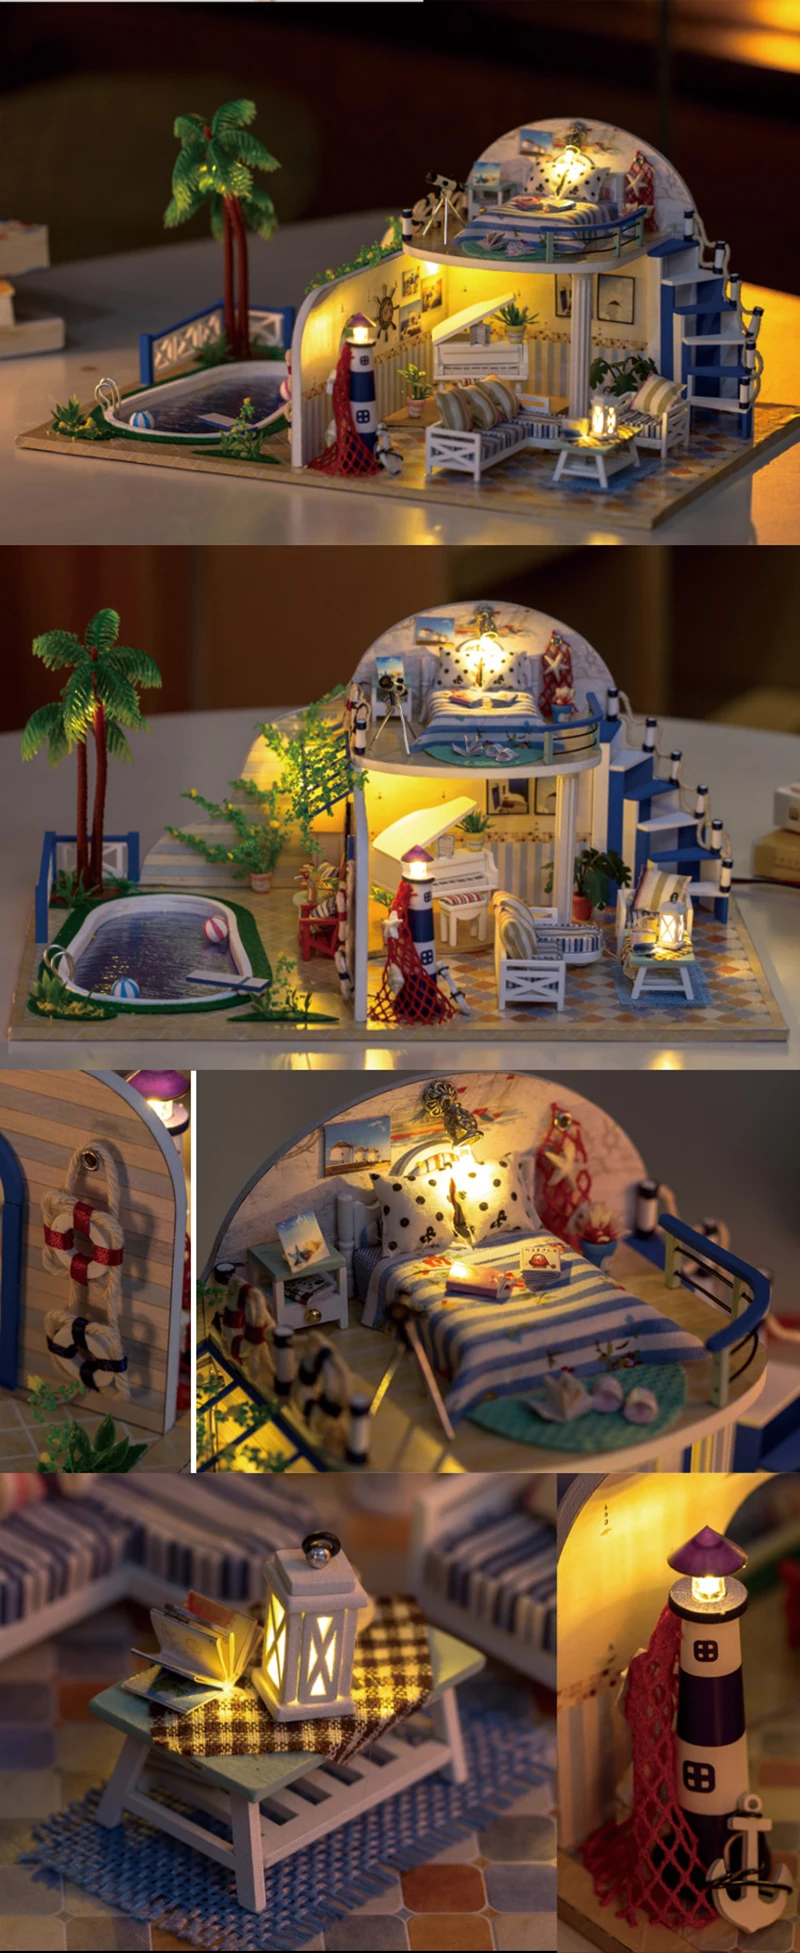 DIY Кукольный дом Миниатюрный Кукольный домик с мебелью деревянная модель ручной сборки Каса игрушки для детей прозрачные летние виллы X003# E